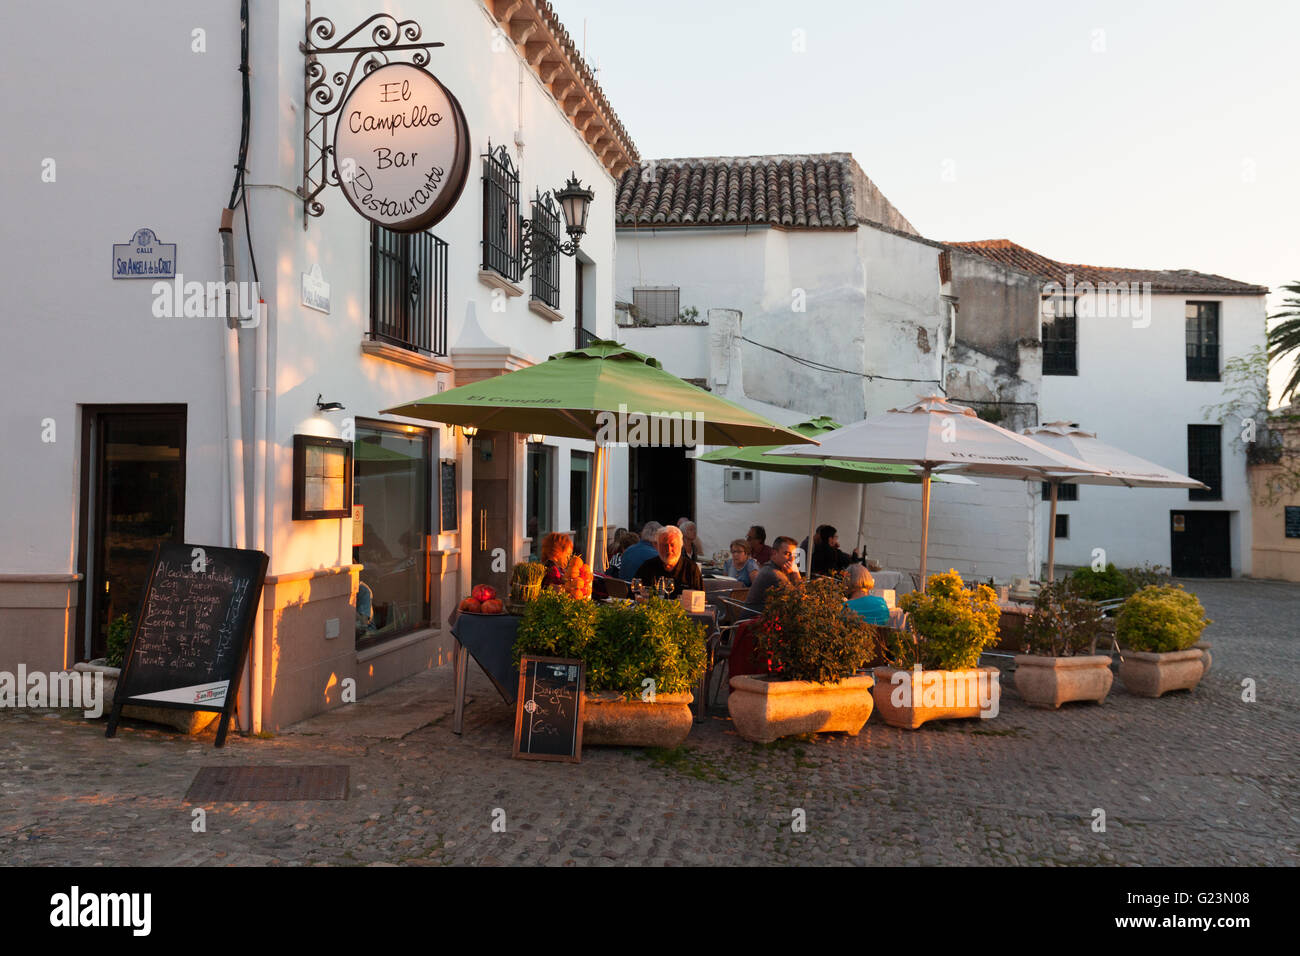 Des gens assis manger dans un restaurant le soir, Ronda, Andalousie Espagne Banque D'Images